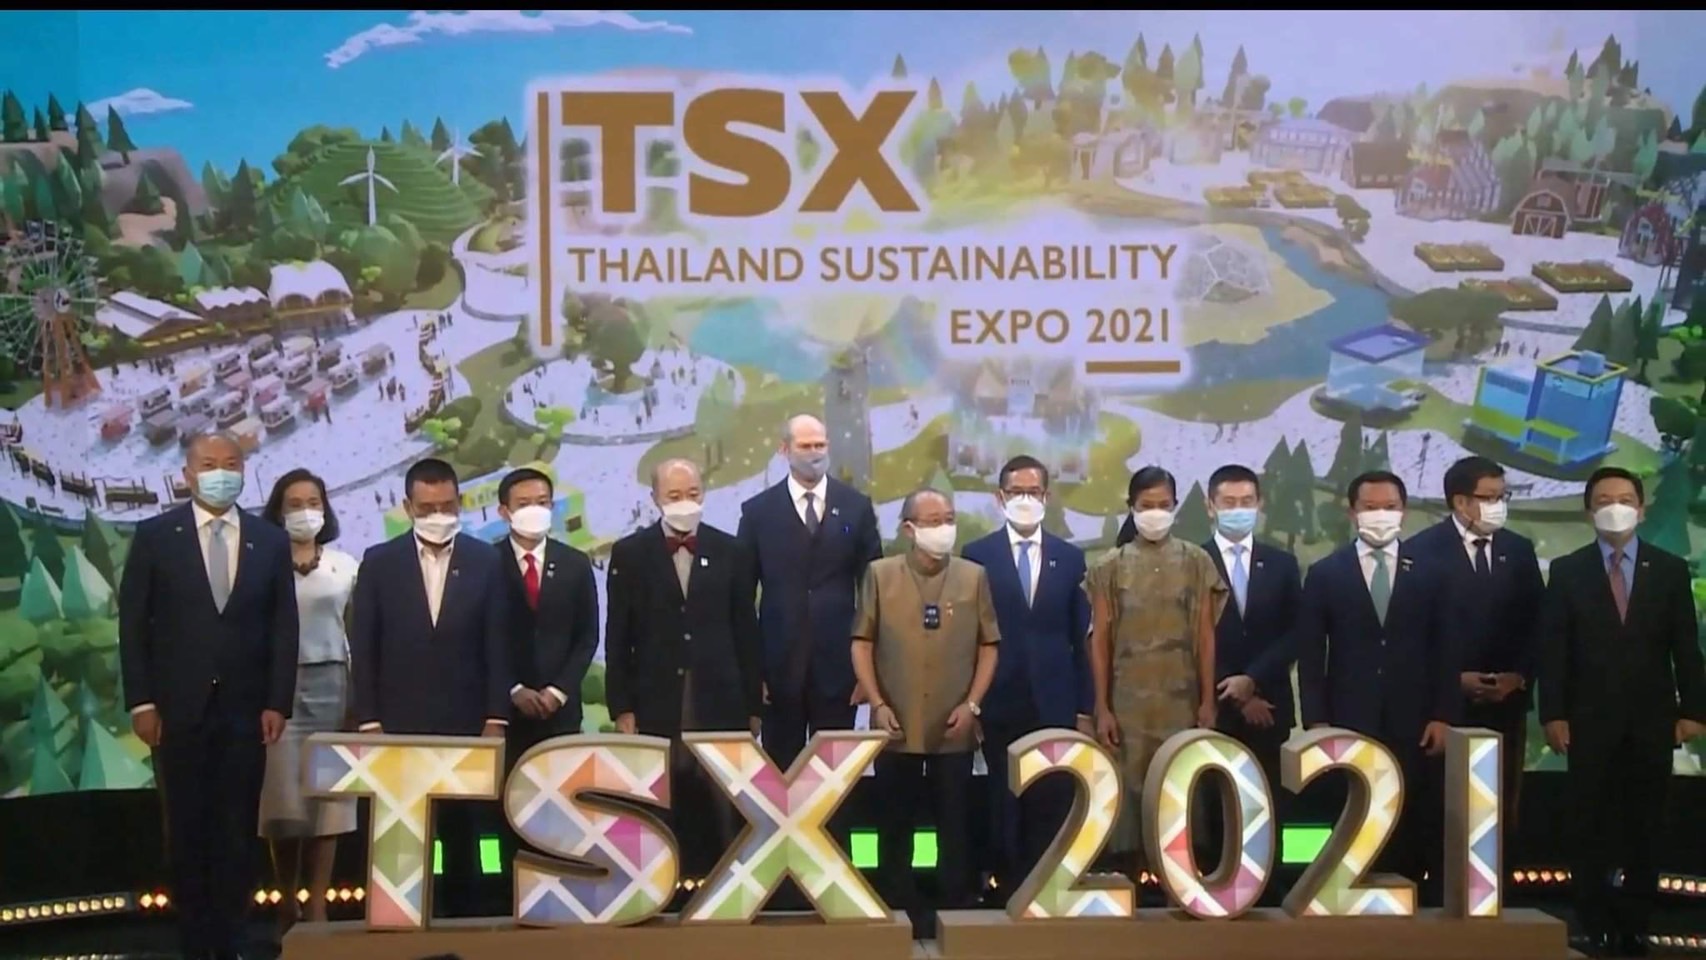 เอกชน จัด Thailand Sustainability Expo ชวนคนรุ่นใหม่ใส่ใจความยั่งยืน – สังคม